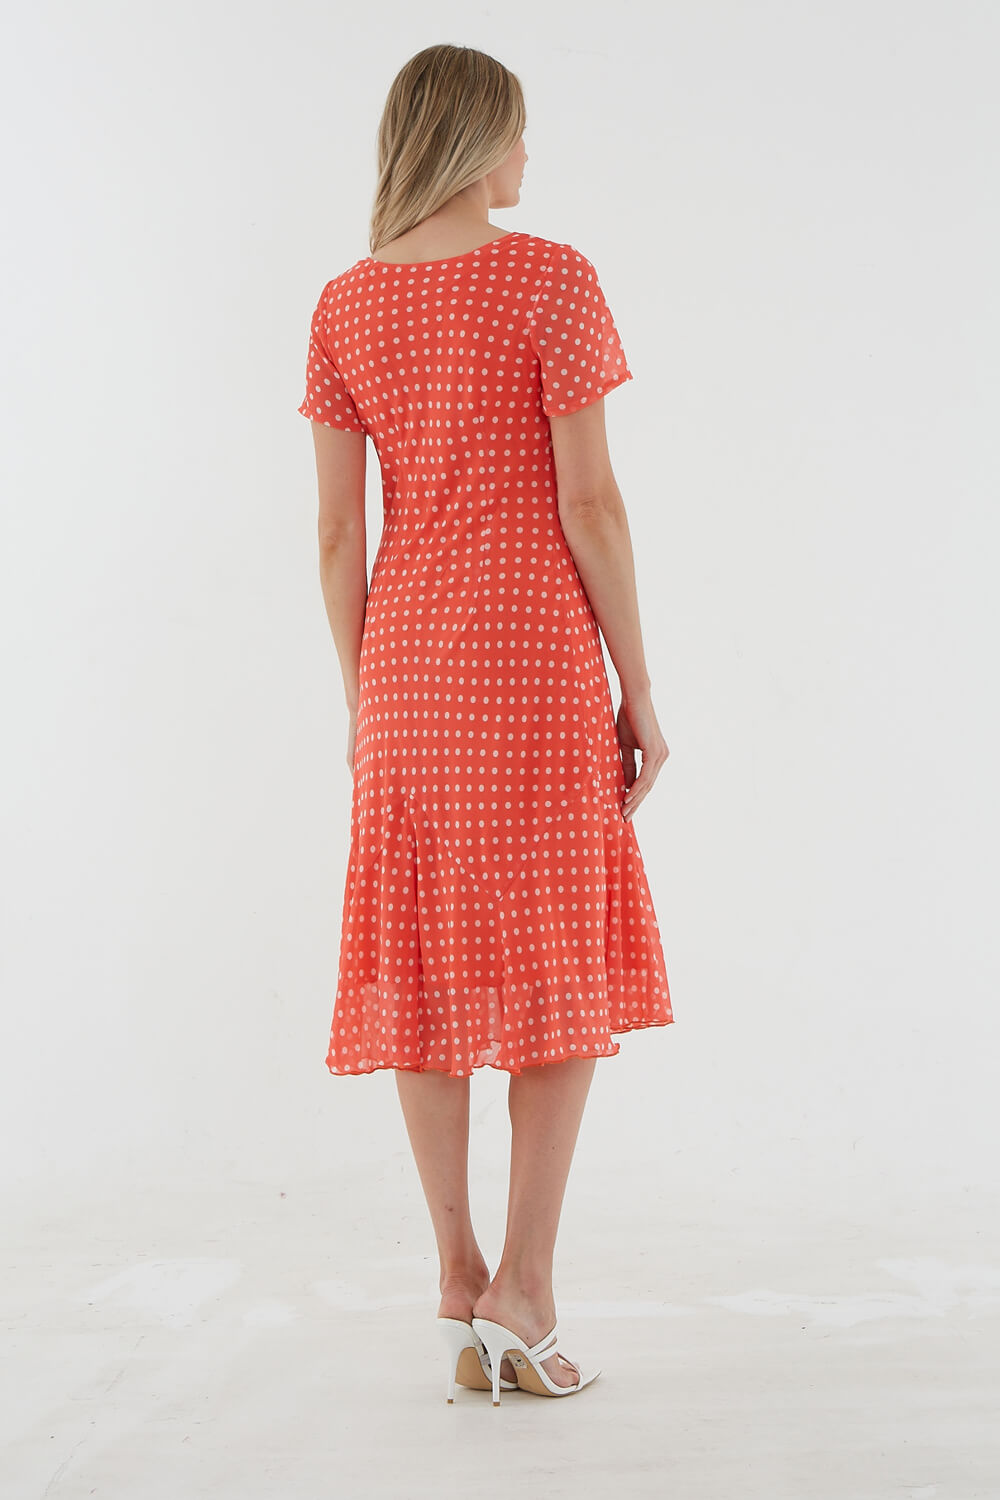 CORAL Julianna Spot Print Chiffon Dress, Image 2 of 3